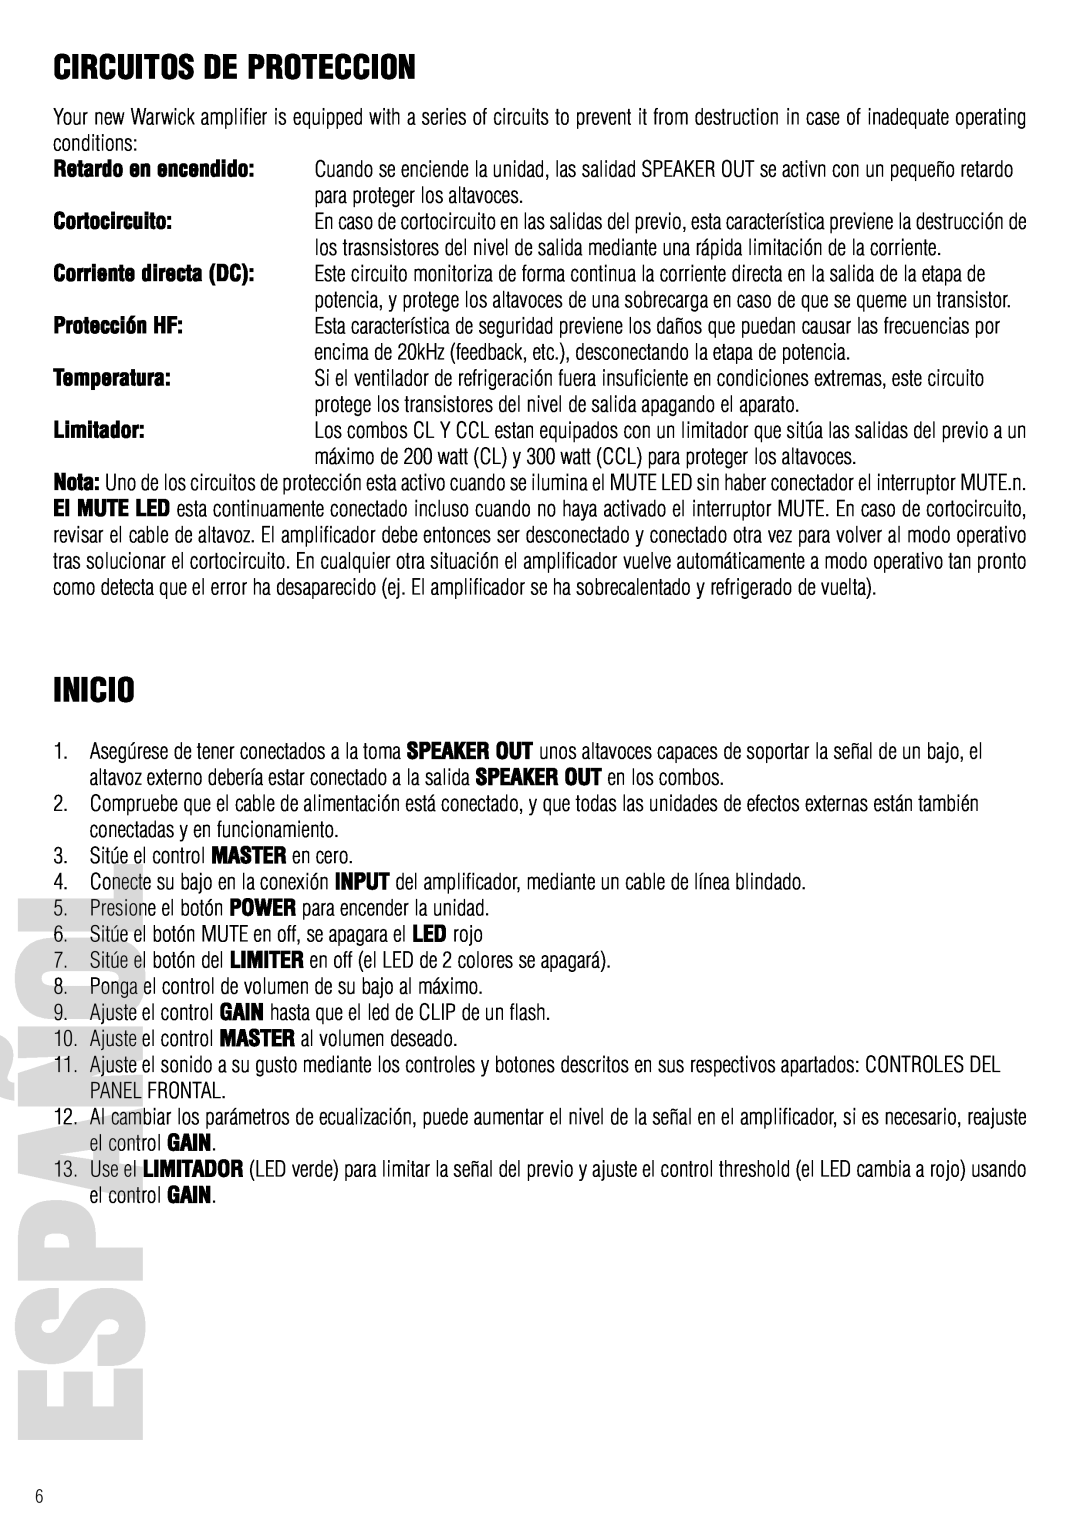 Warwick CL / CCL owner manual Circuitos De Proteccion, Inicio, Español 